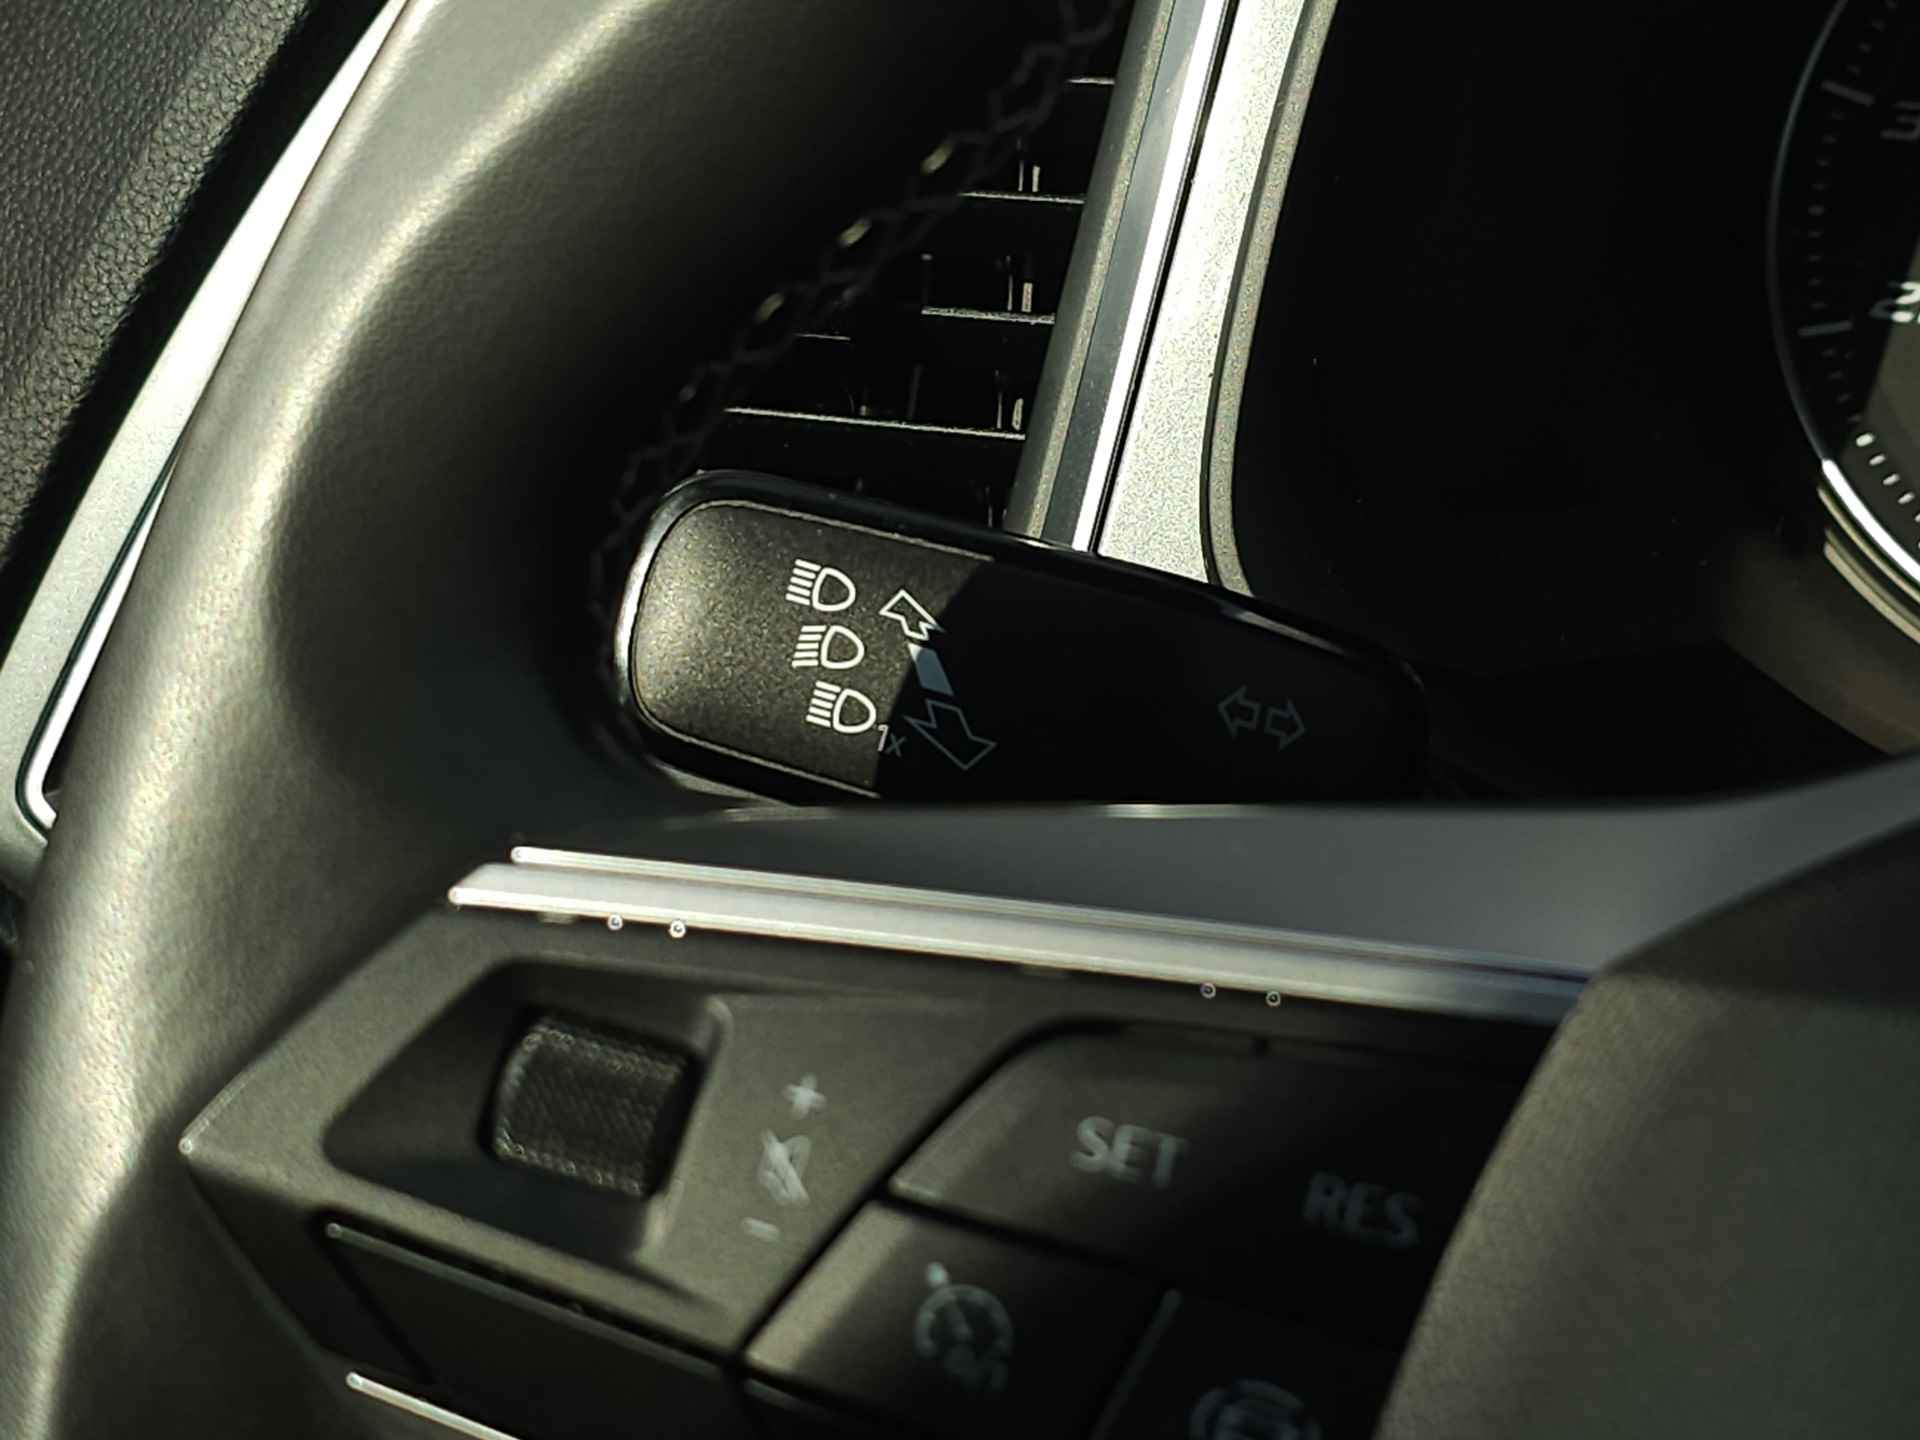 SEAT Ateca 1.0 TSI 110 pk Style Business Intense | Navigatie | LED | Lm velgen | Camera | Sensoren | All Season banden | incl. Bovag rijklaarpakket met 12 maanden garantie | - 21/35